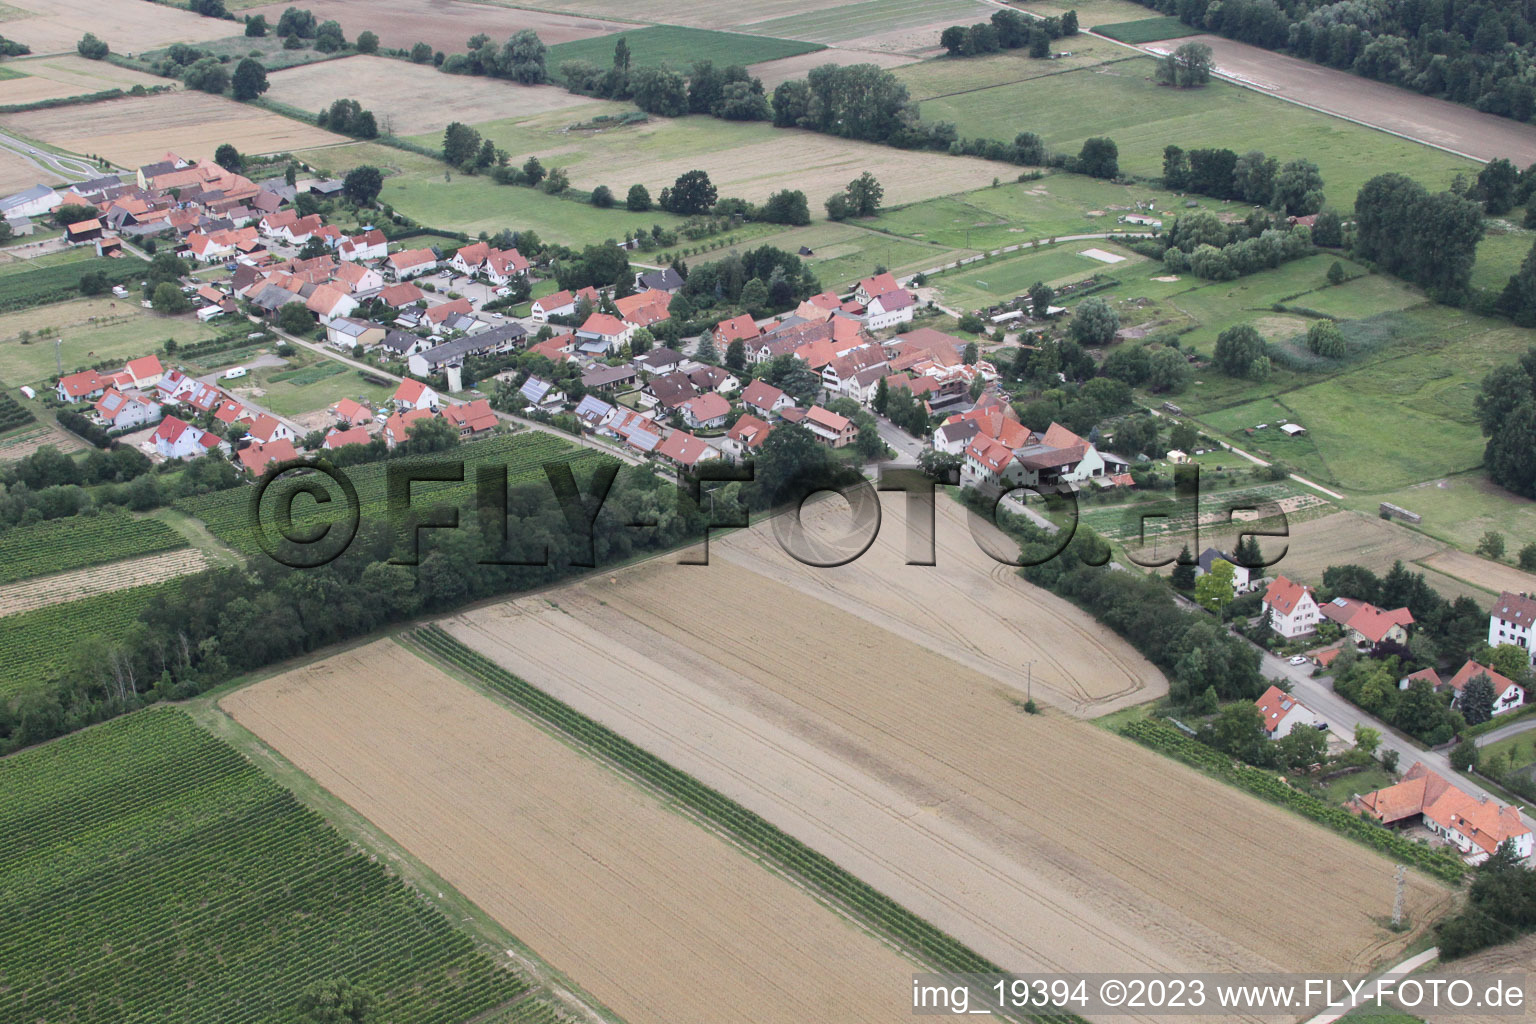 Hergersweiler im Bundesland Rheinland-Pfalz, Deutschland von der Drohne aus gesehen